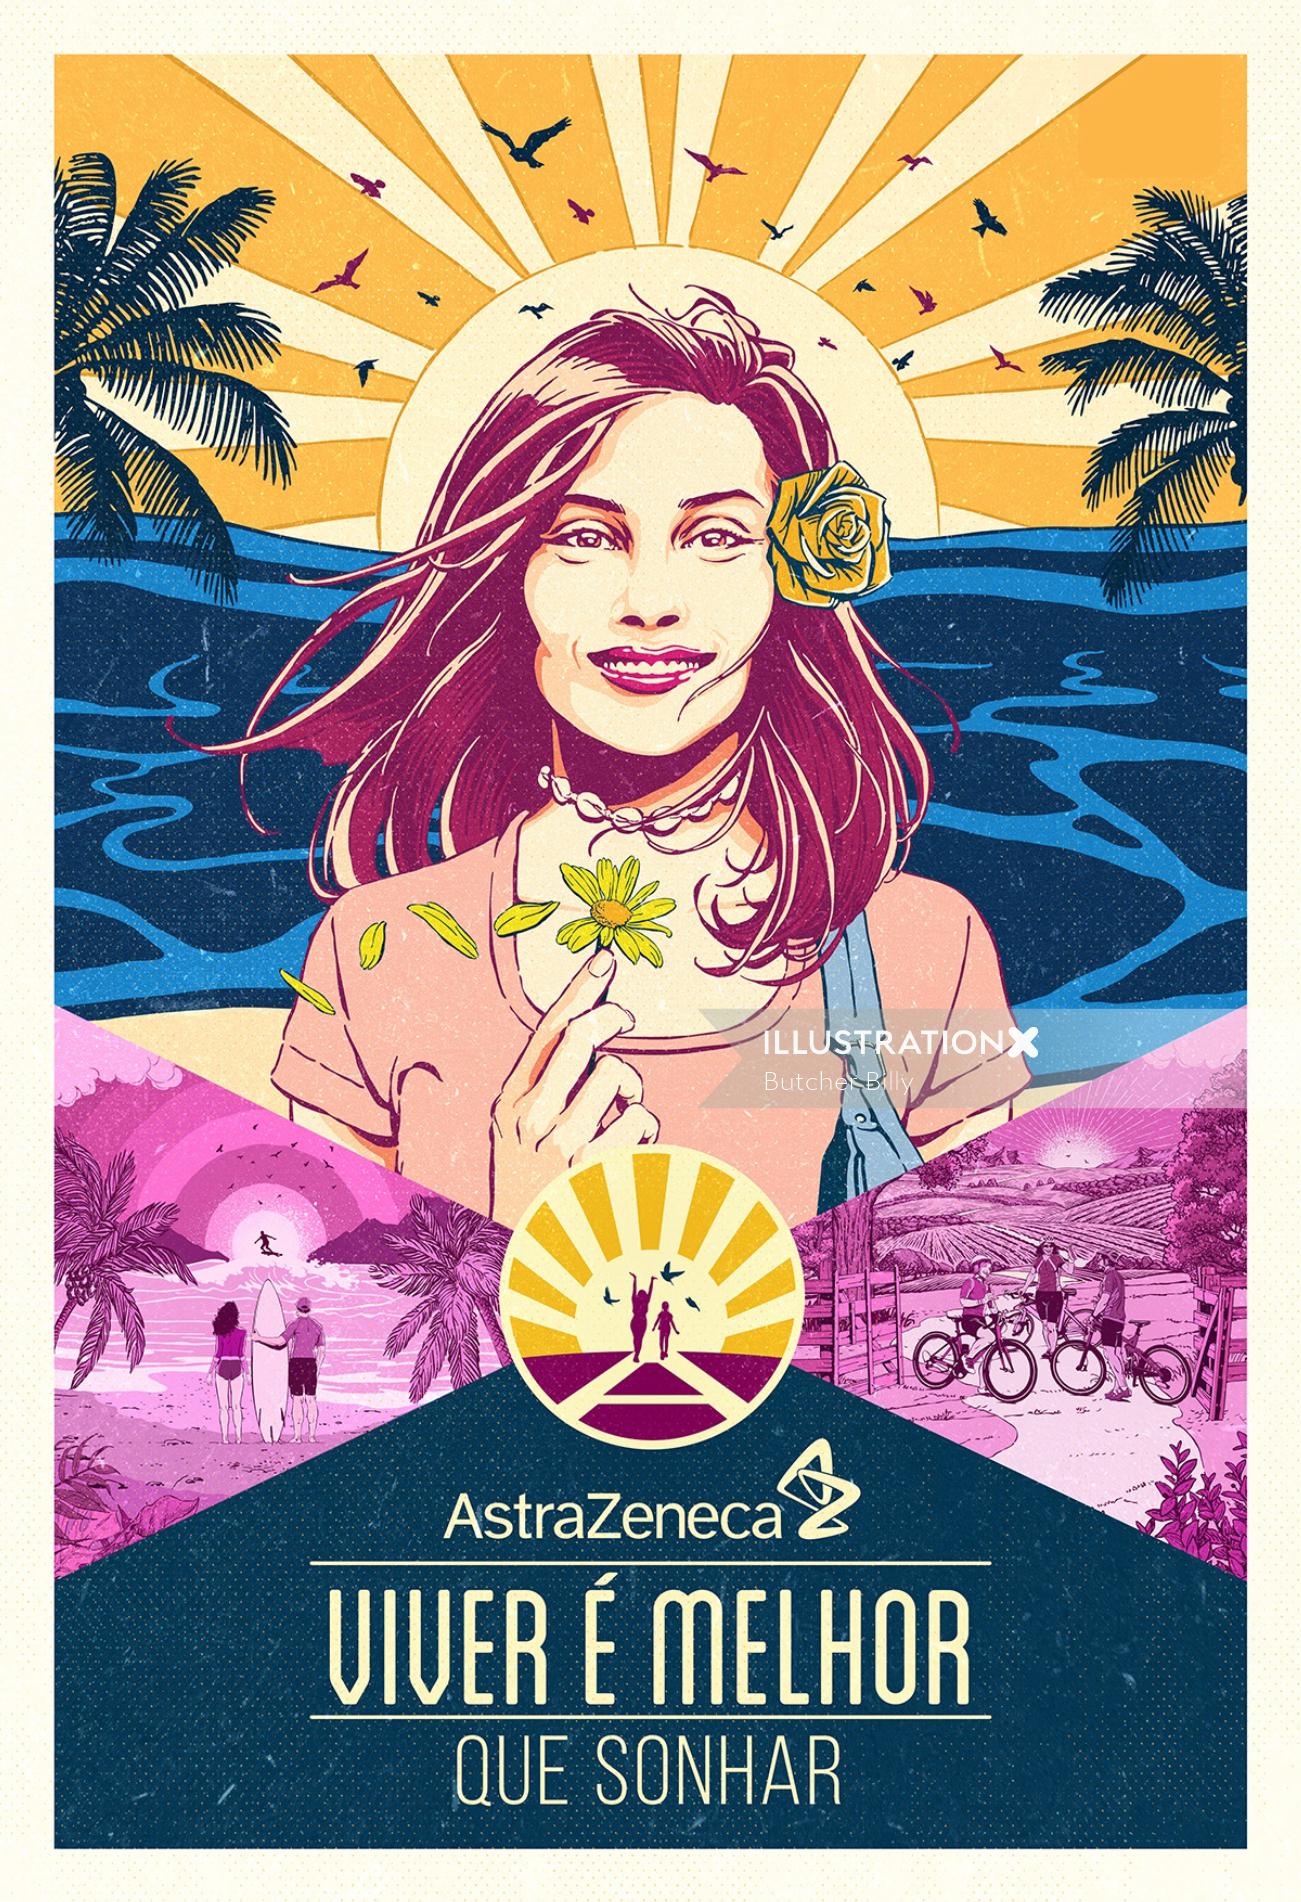 アストラゼネカの COVID-19 ワクチンのポスター